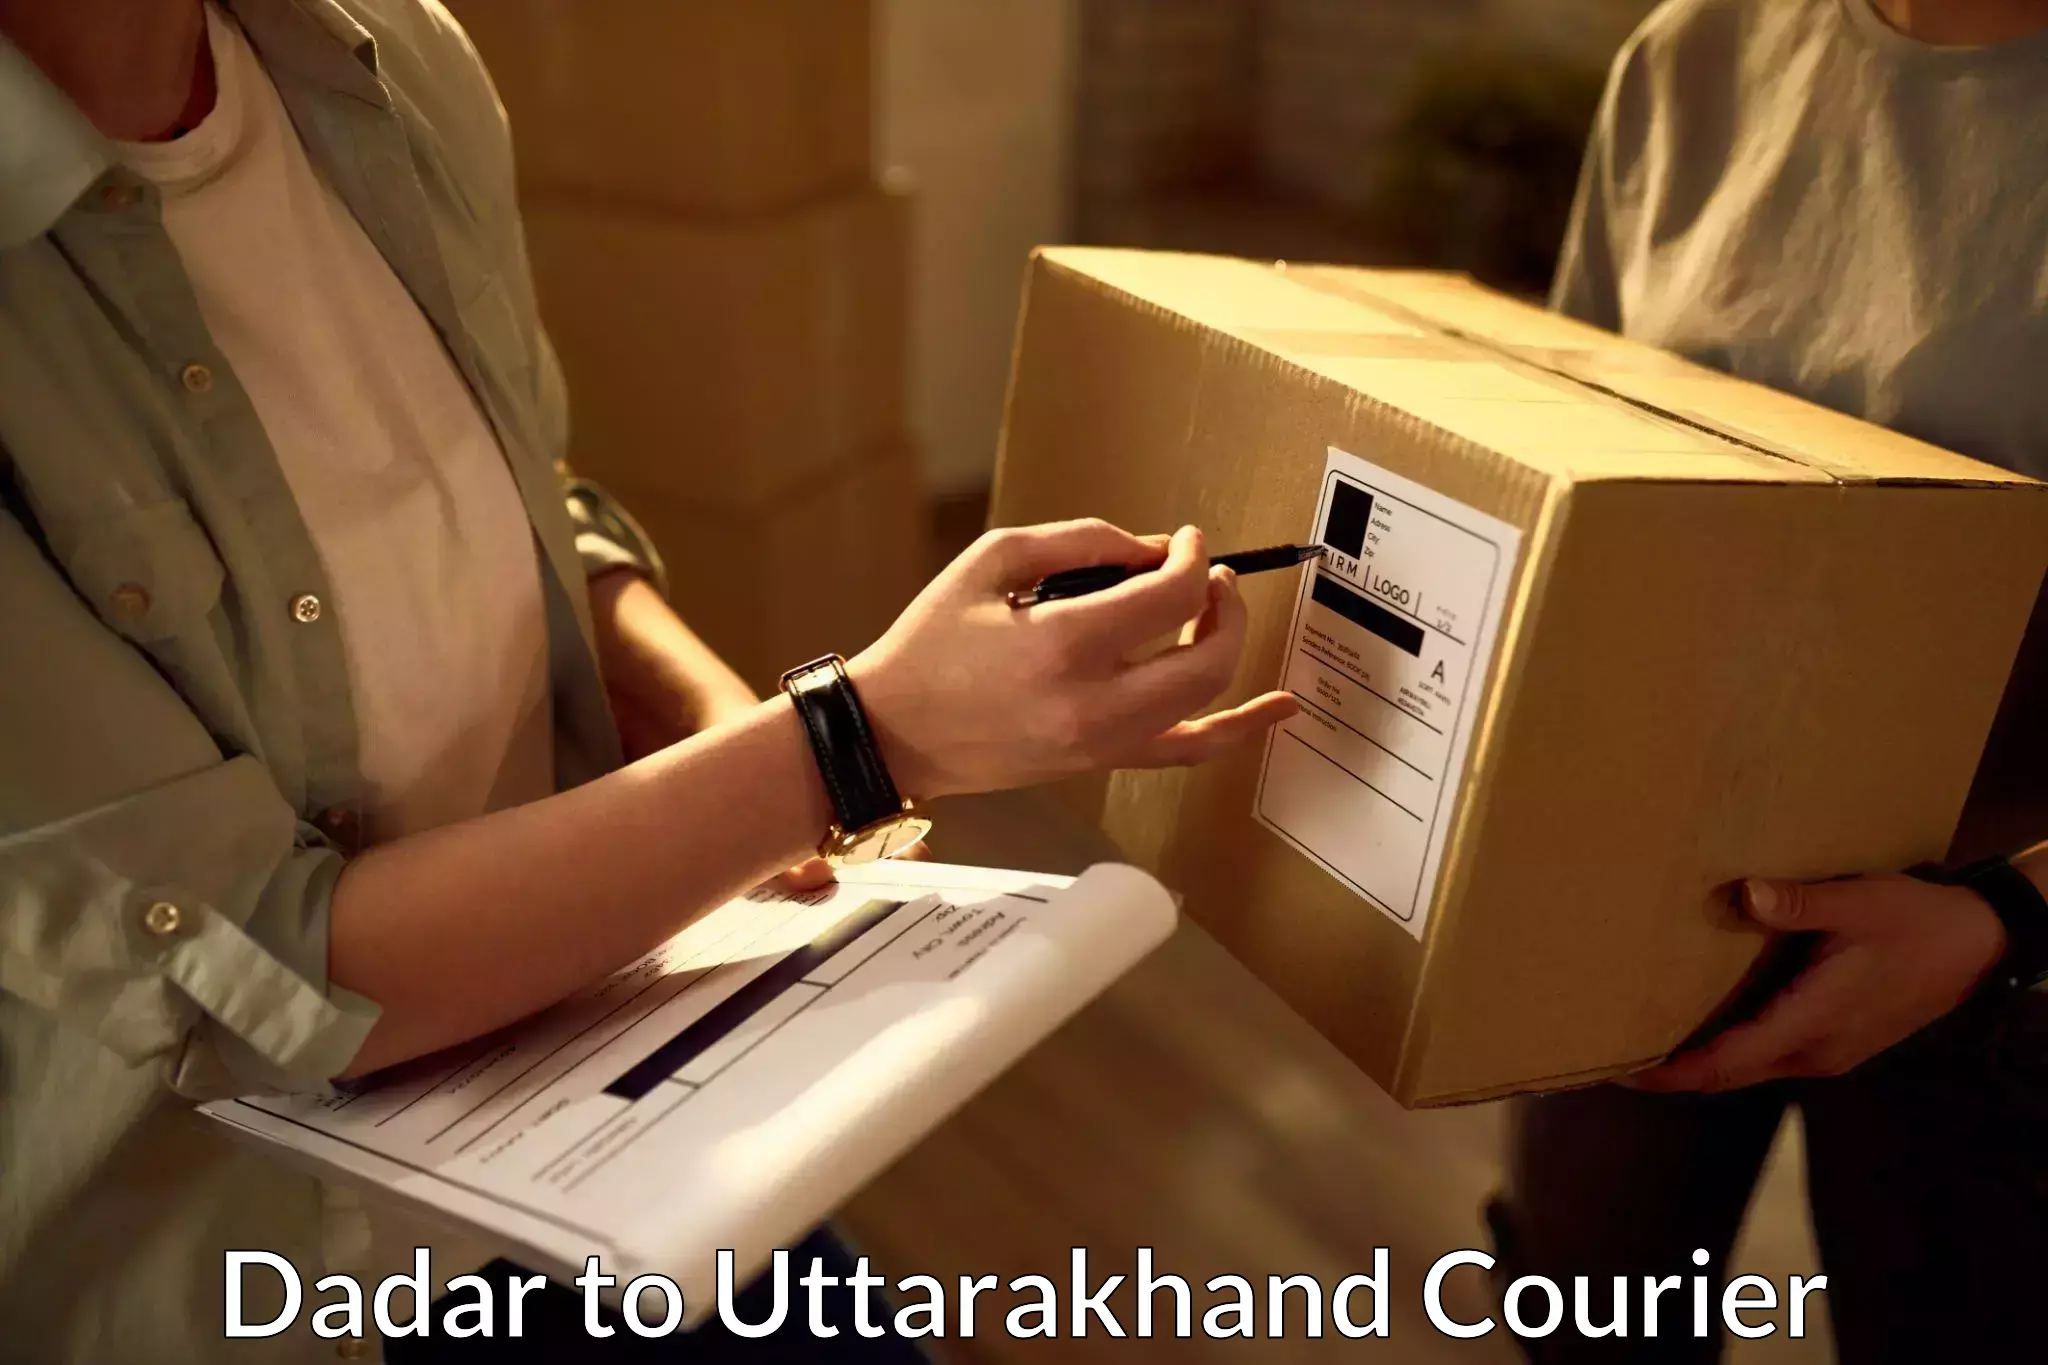 Expedited shipping methods Dadar to Uttarakhand